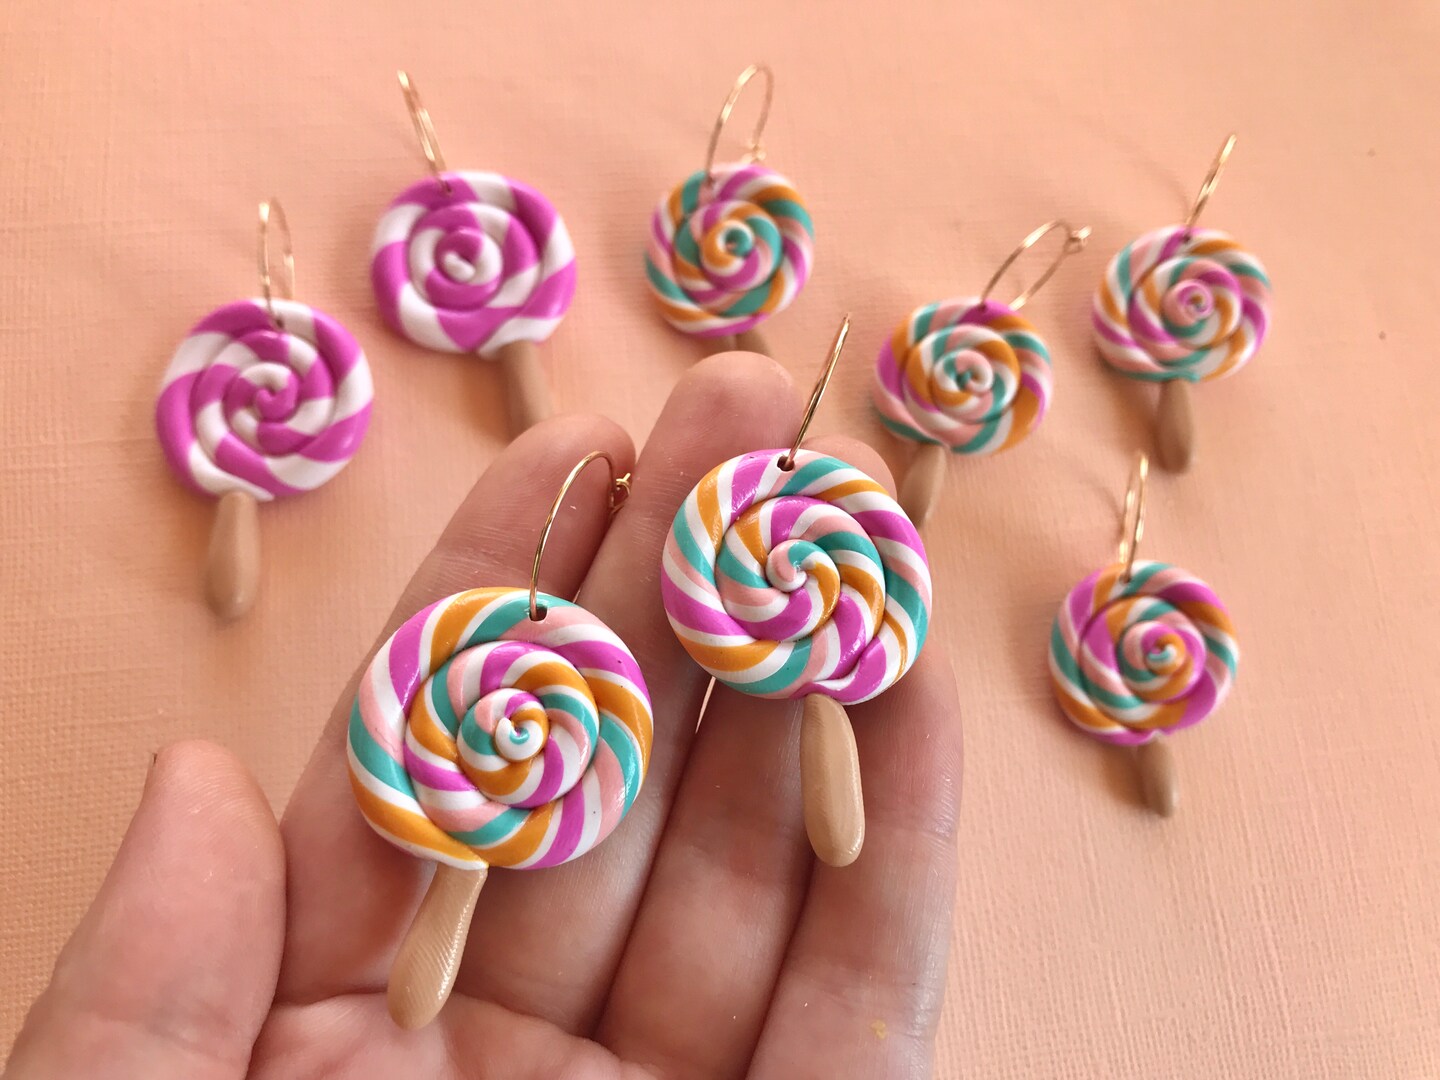 Lollipop Earrings, Colorful earrings, cute candy earring,  lollipop jewelry, kawaii earrings, cute earrings, miniature food jewelry 208305916492316672